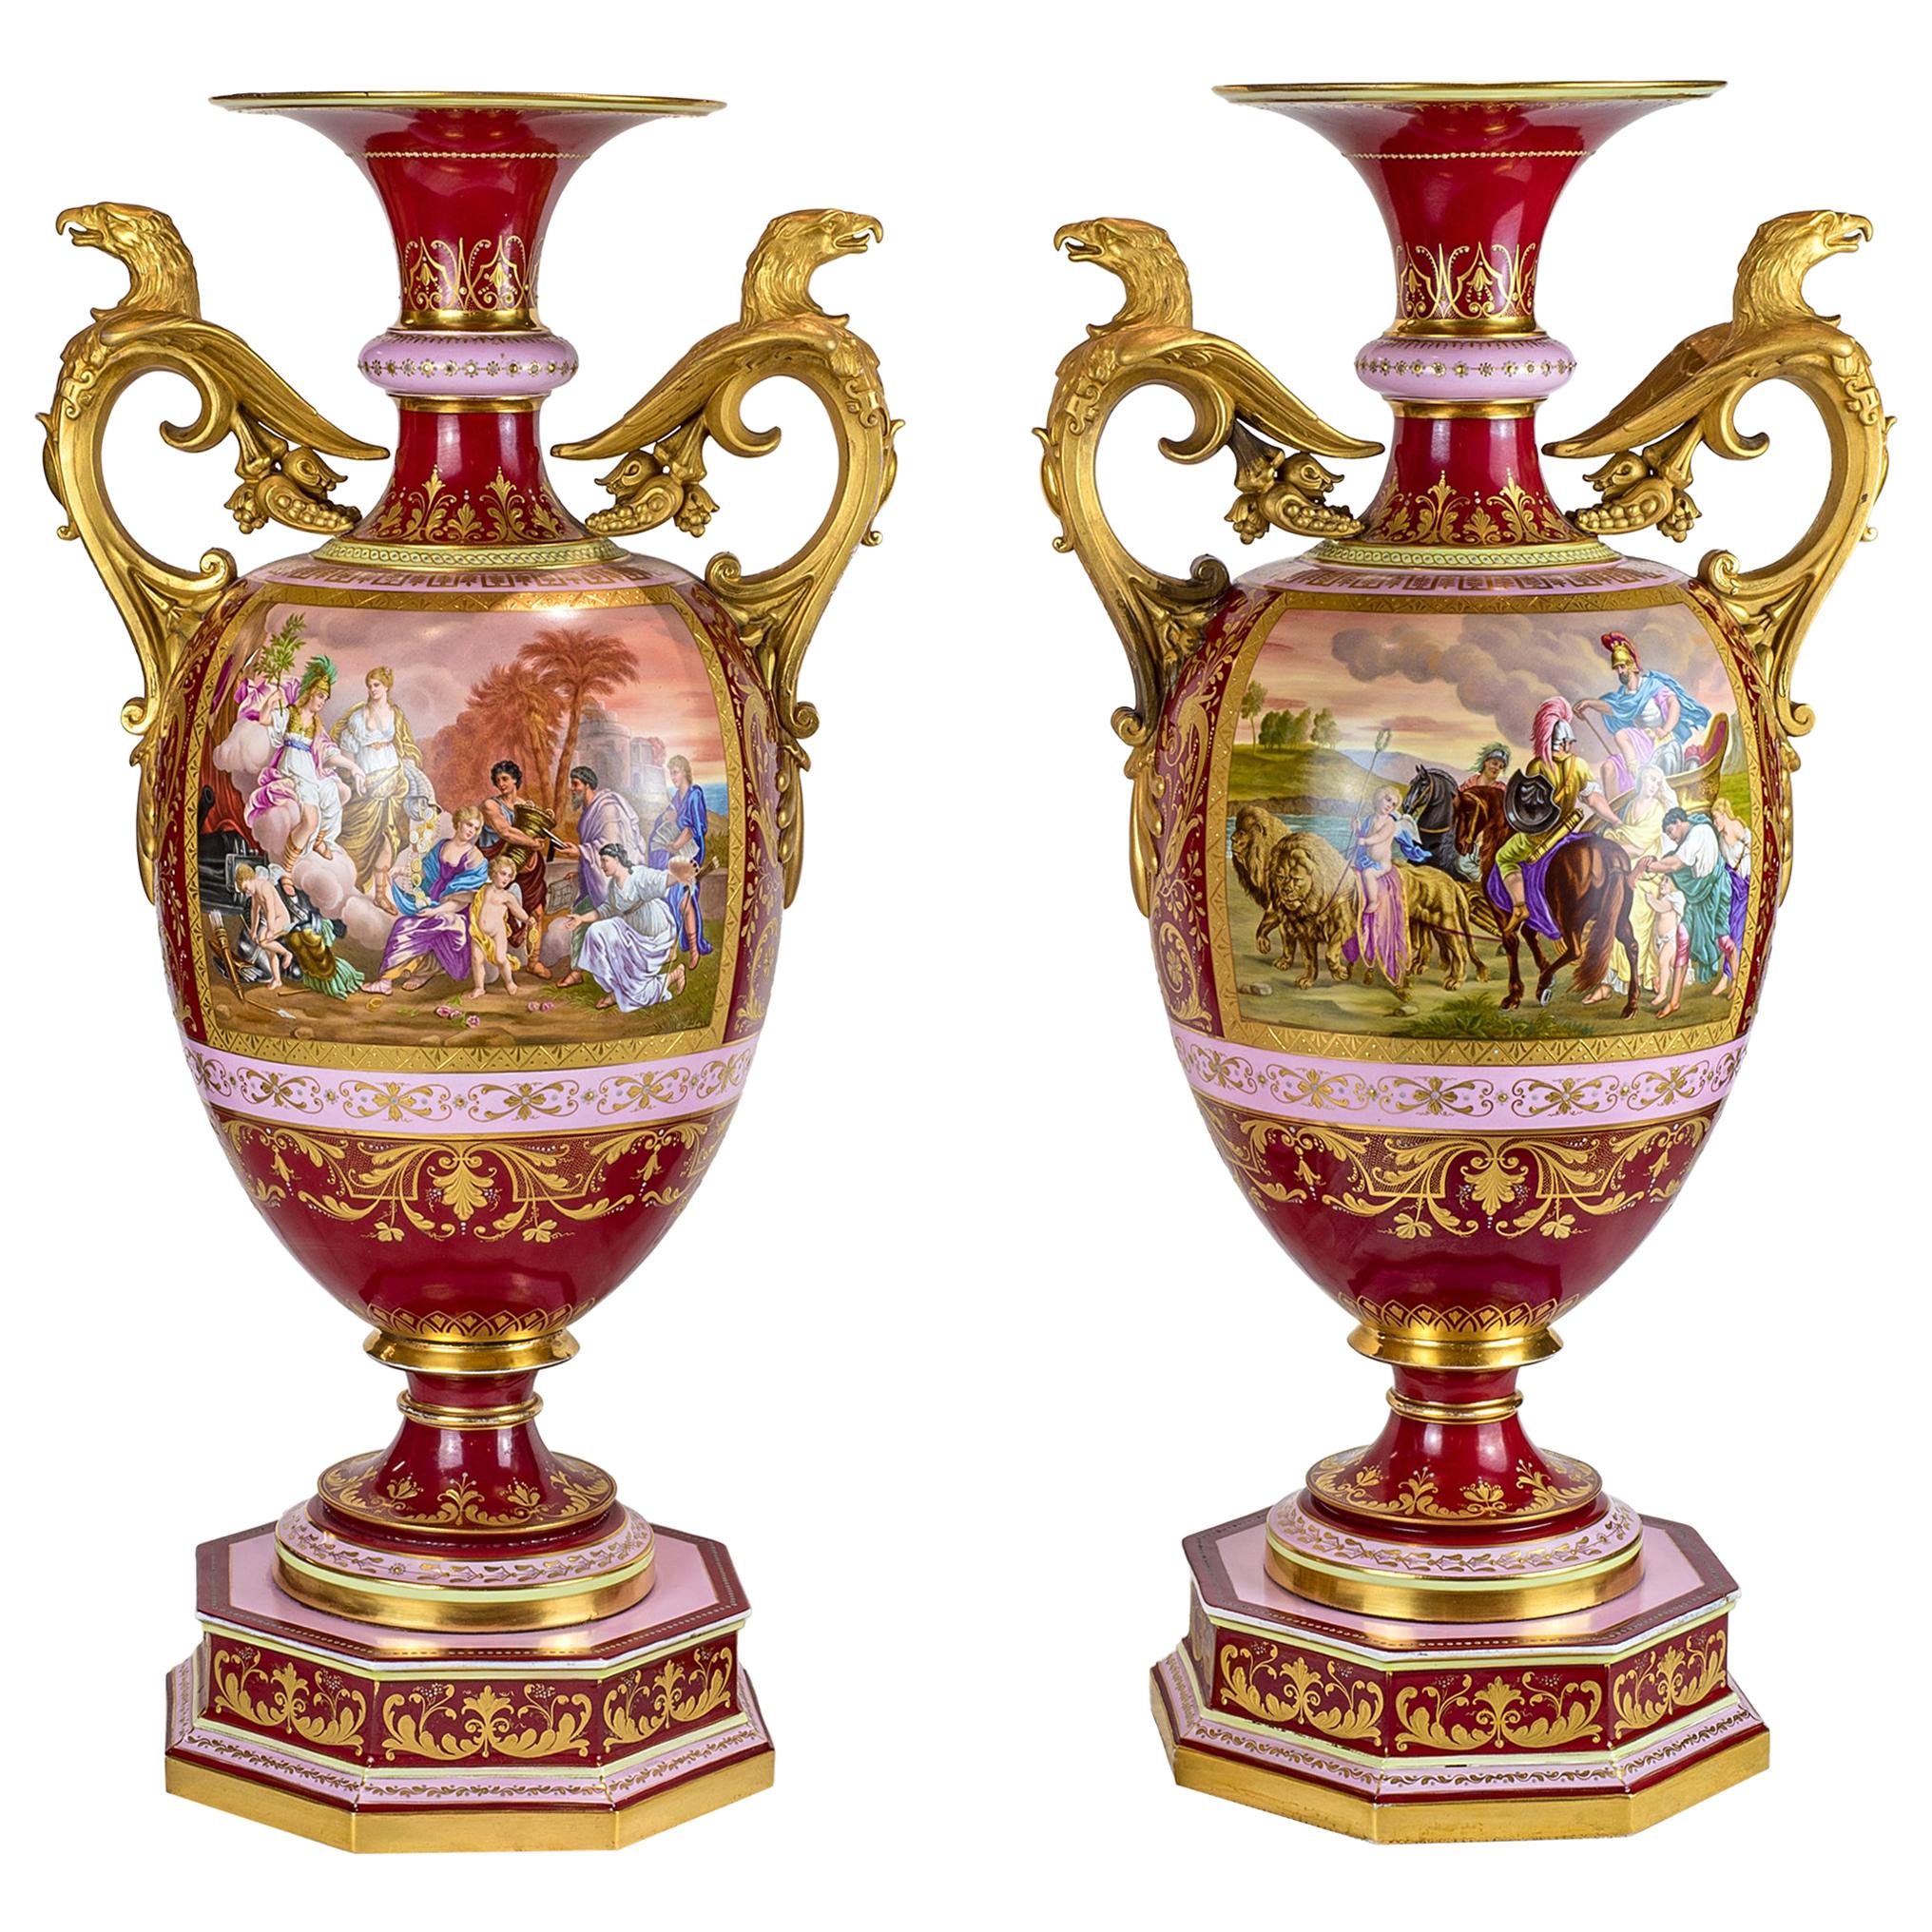 Magnifique paire d'urnes en porcelaine de style royal viennois montées sur bronze doré